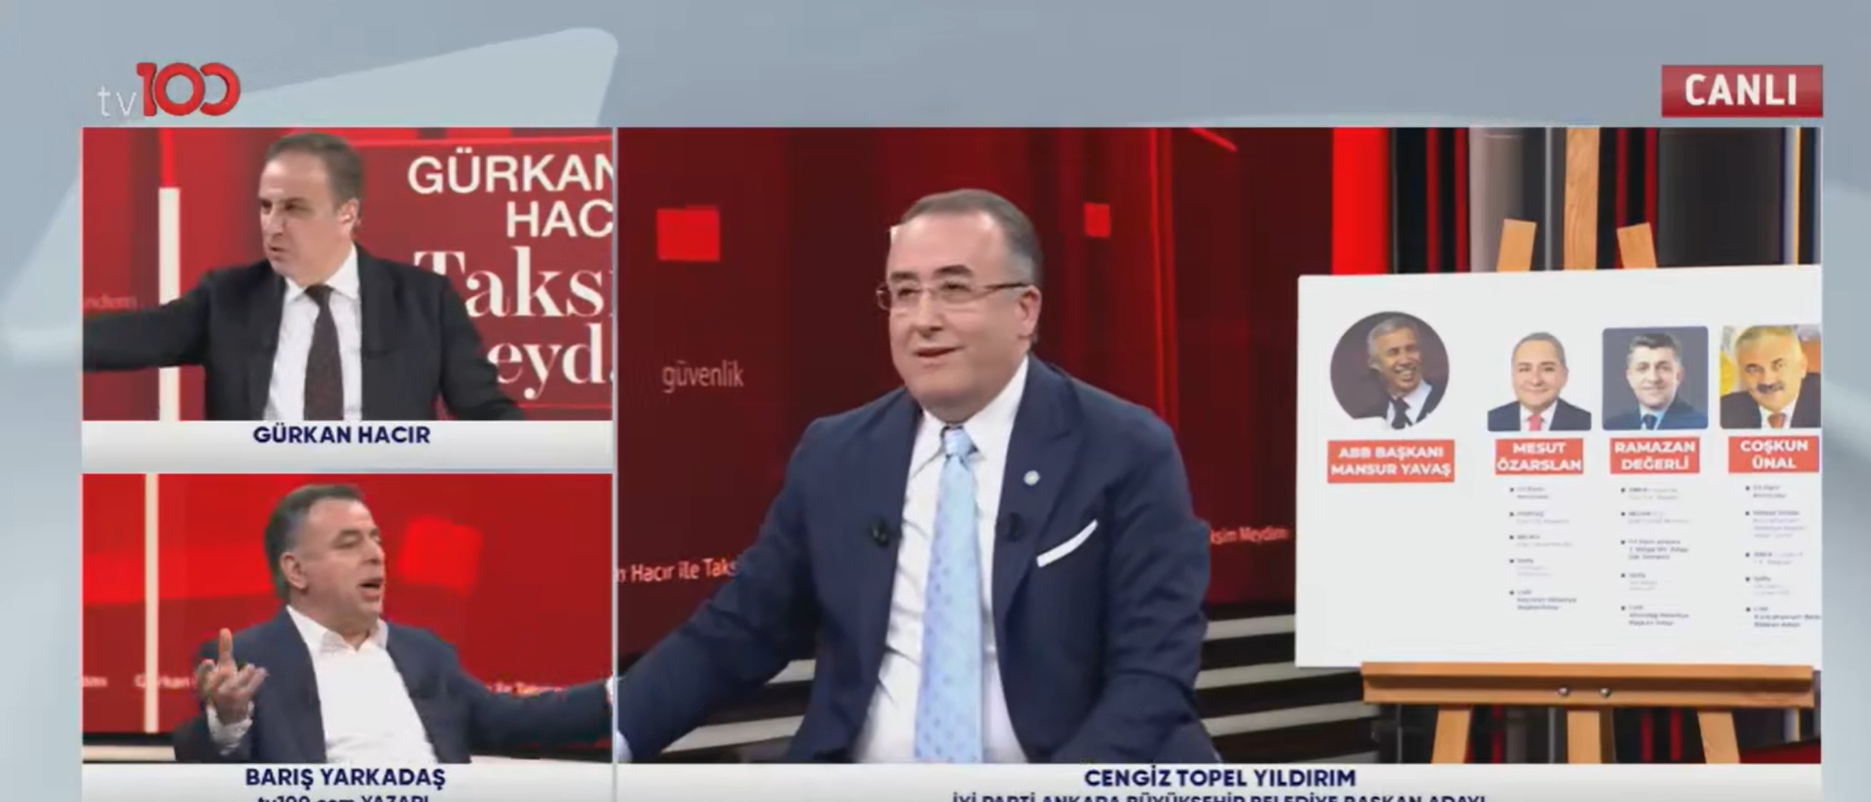 İYİ Parti'nin Ankara adayı Cengiz Topel Yıldırım, Mamak'tan aday olmak için CHP ile görüştüğü hakkındaki iddiaları yanıtsız bıraktı